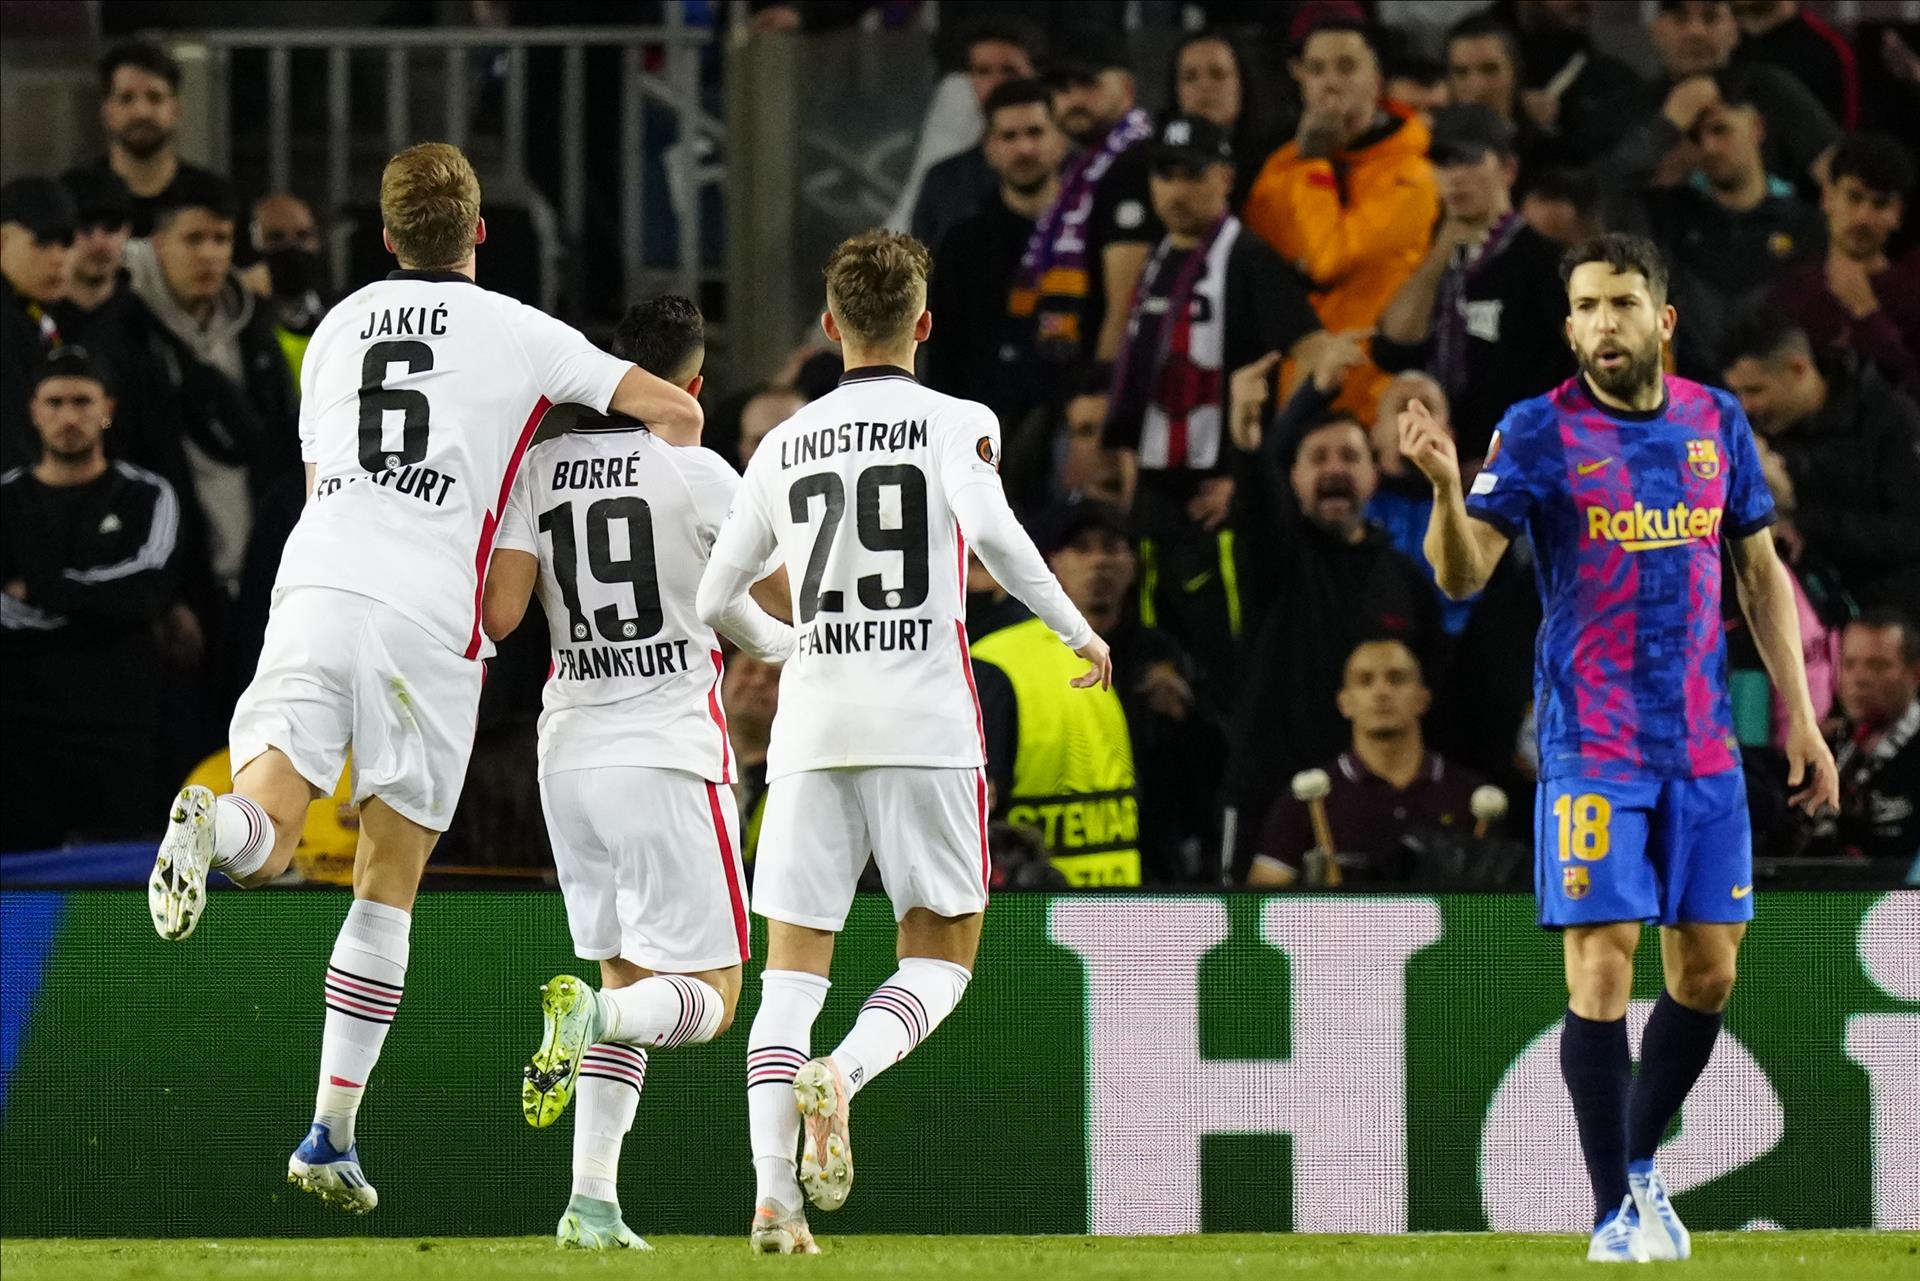 El Barça revivió sus fantasmas europeos ante el Eintracht